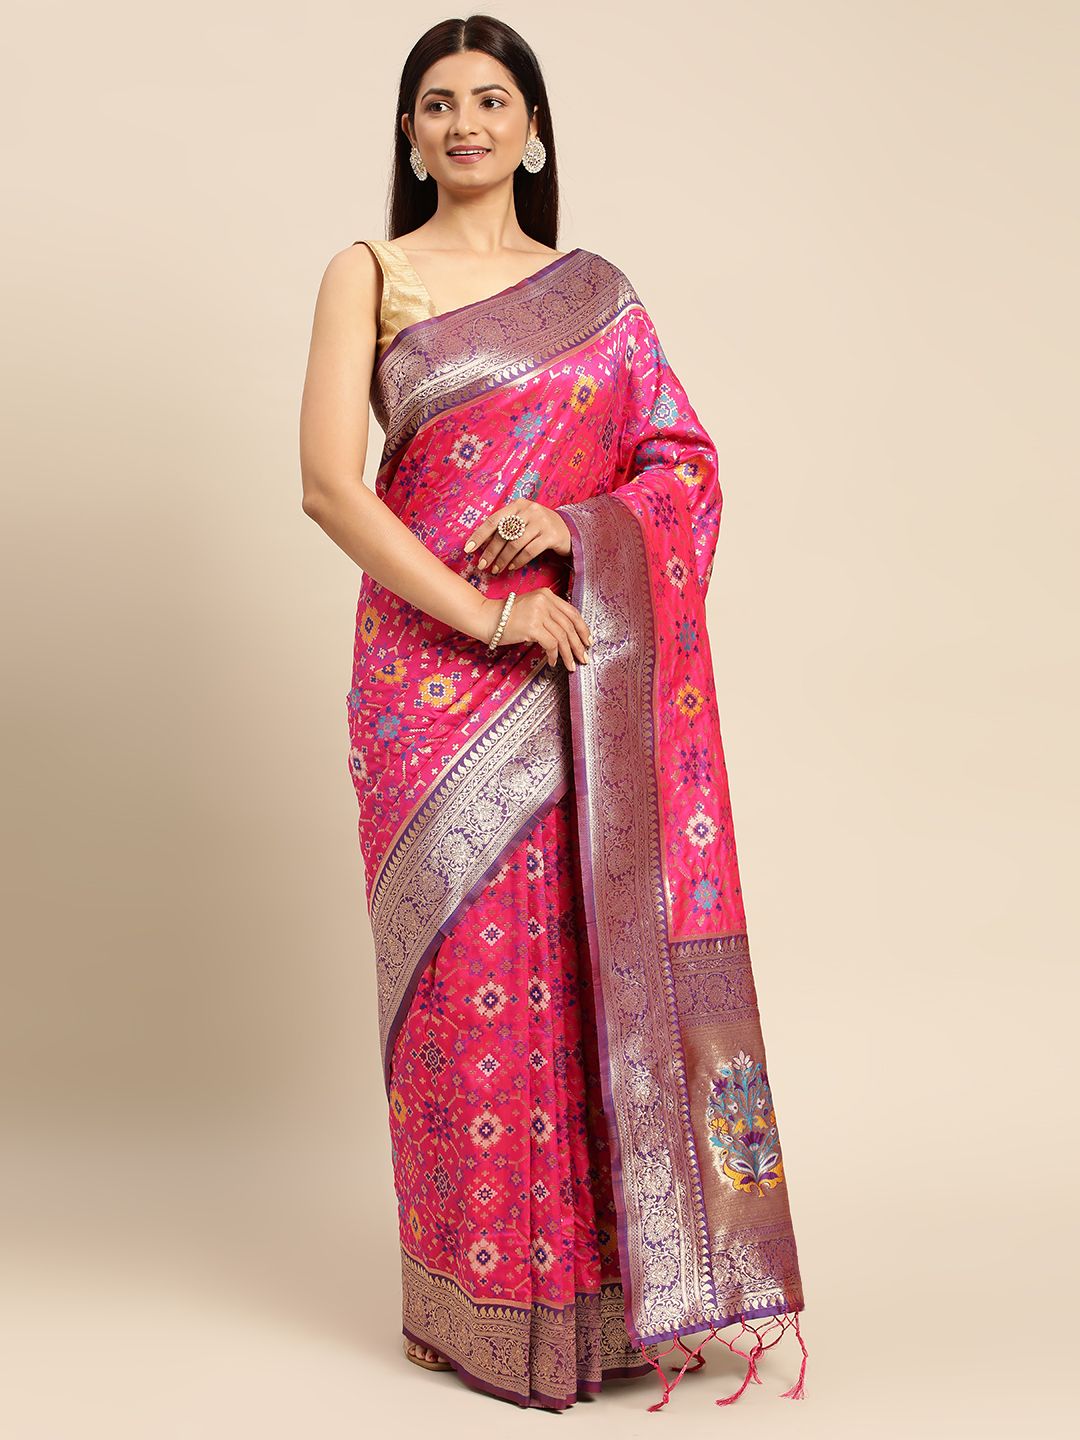 Pink color banarasi weaving patola saree with brilliant look